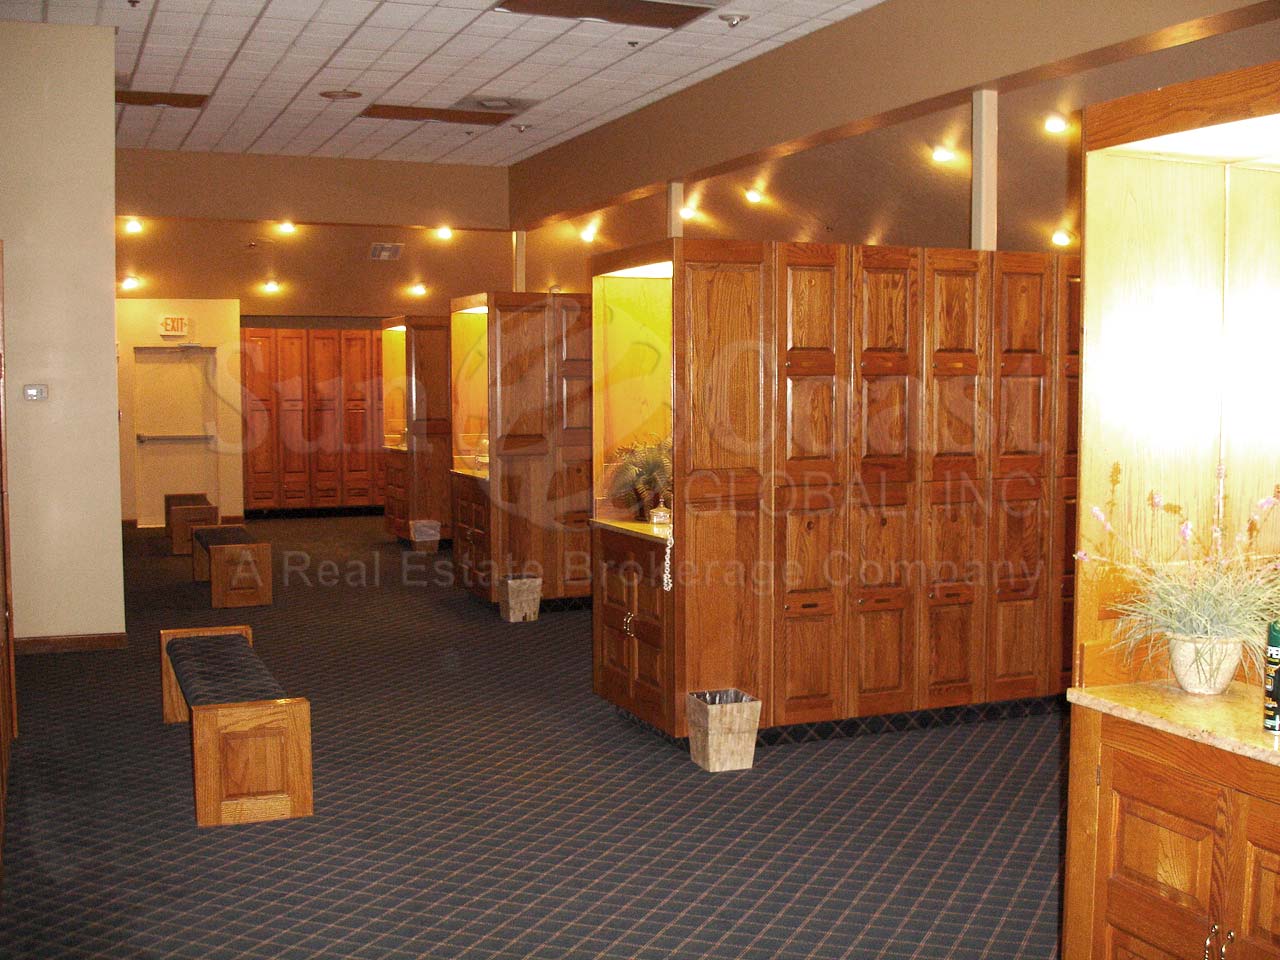 EAGLE CREEK Country Club locker room